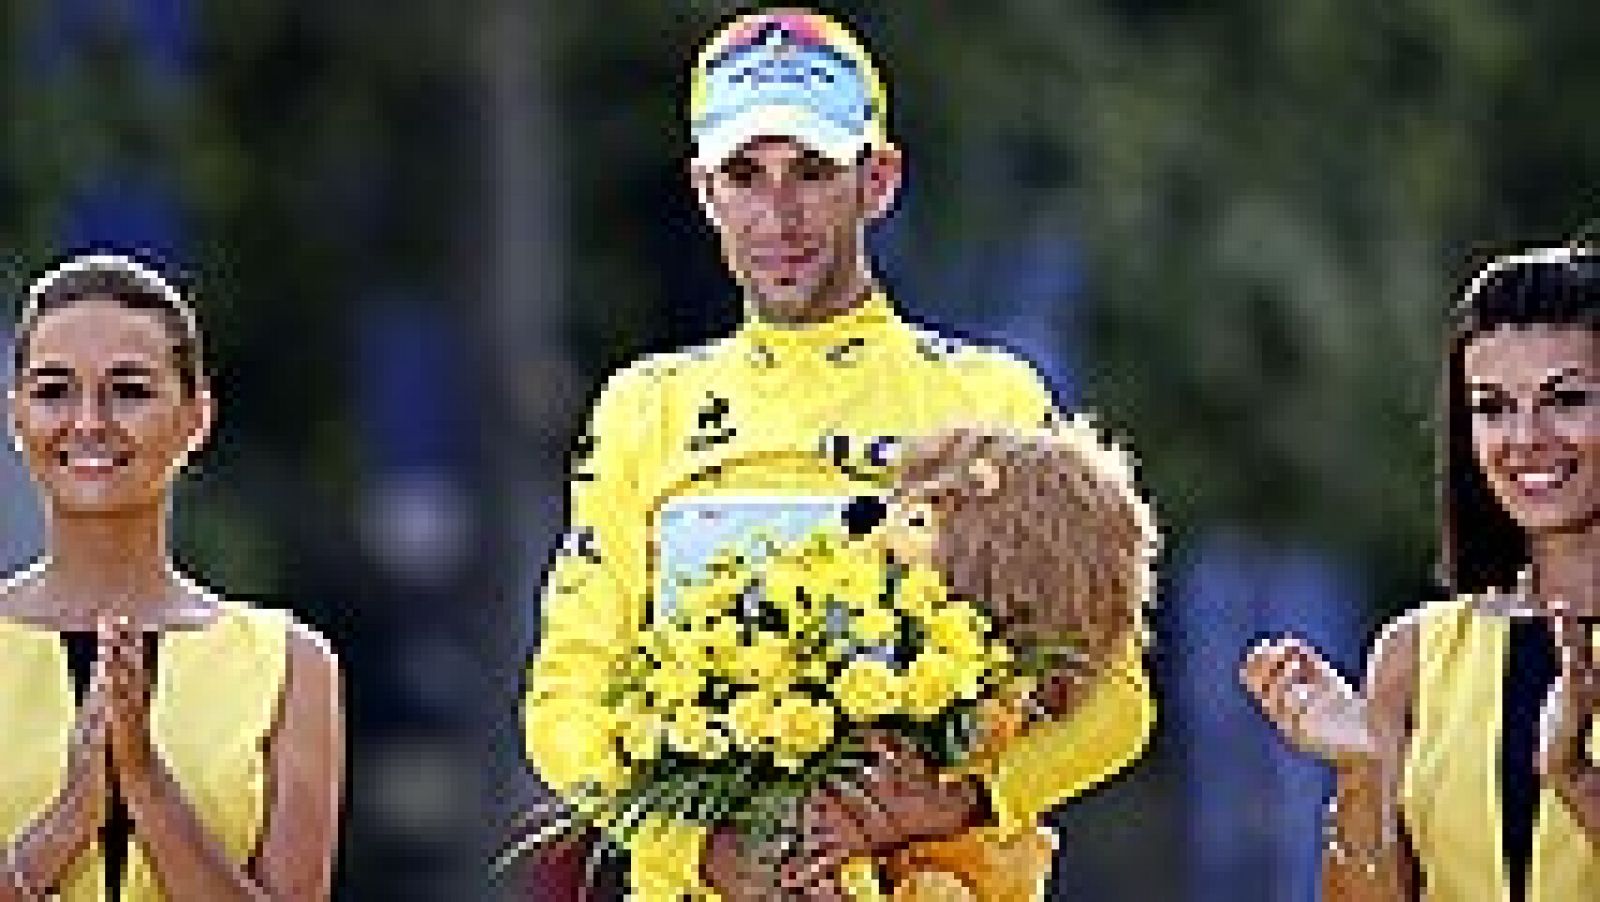 El italiano Vincenzo Nibali, ganador de la 101 edición del Tour de Francia, aseguró hoy desde el podio de los Campos Elíseos, tras recibir el último maillot amarillo, que su triunfo se construyó "paso a paso". "Este es el momento más importante y bon